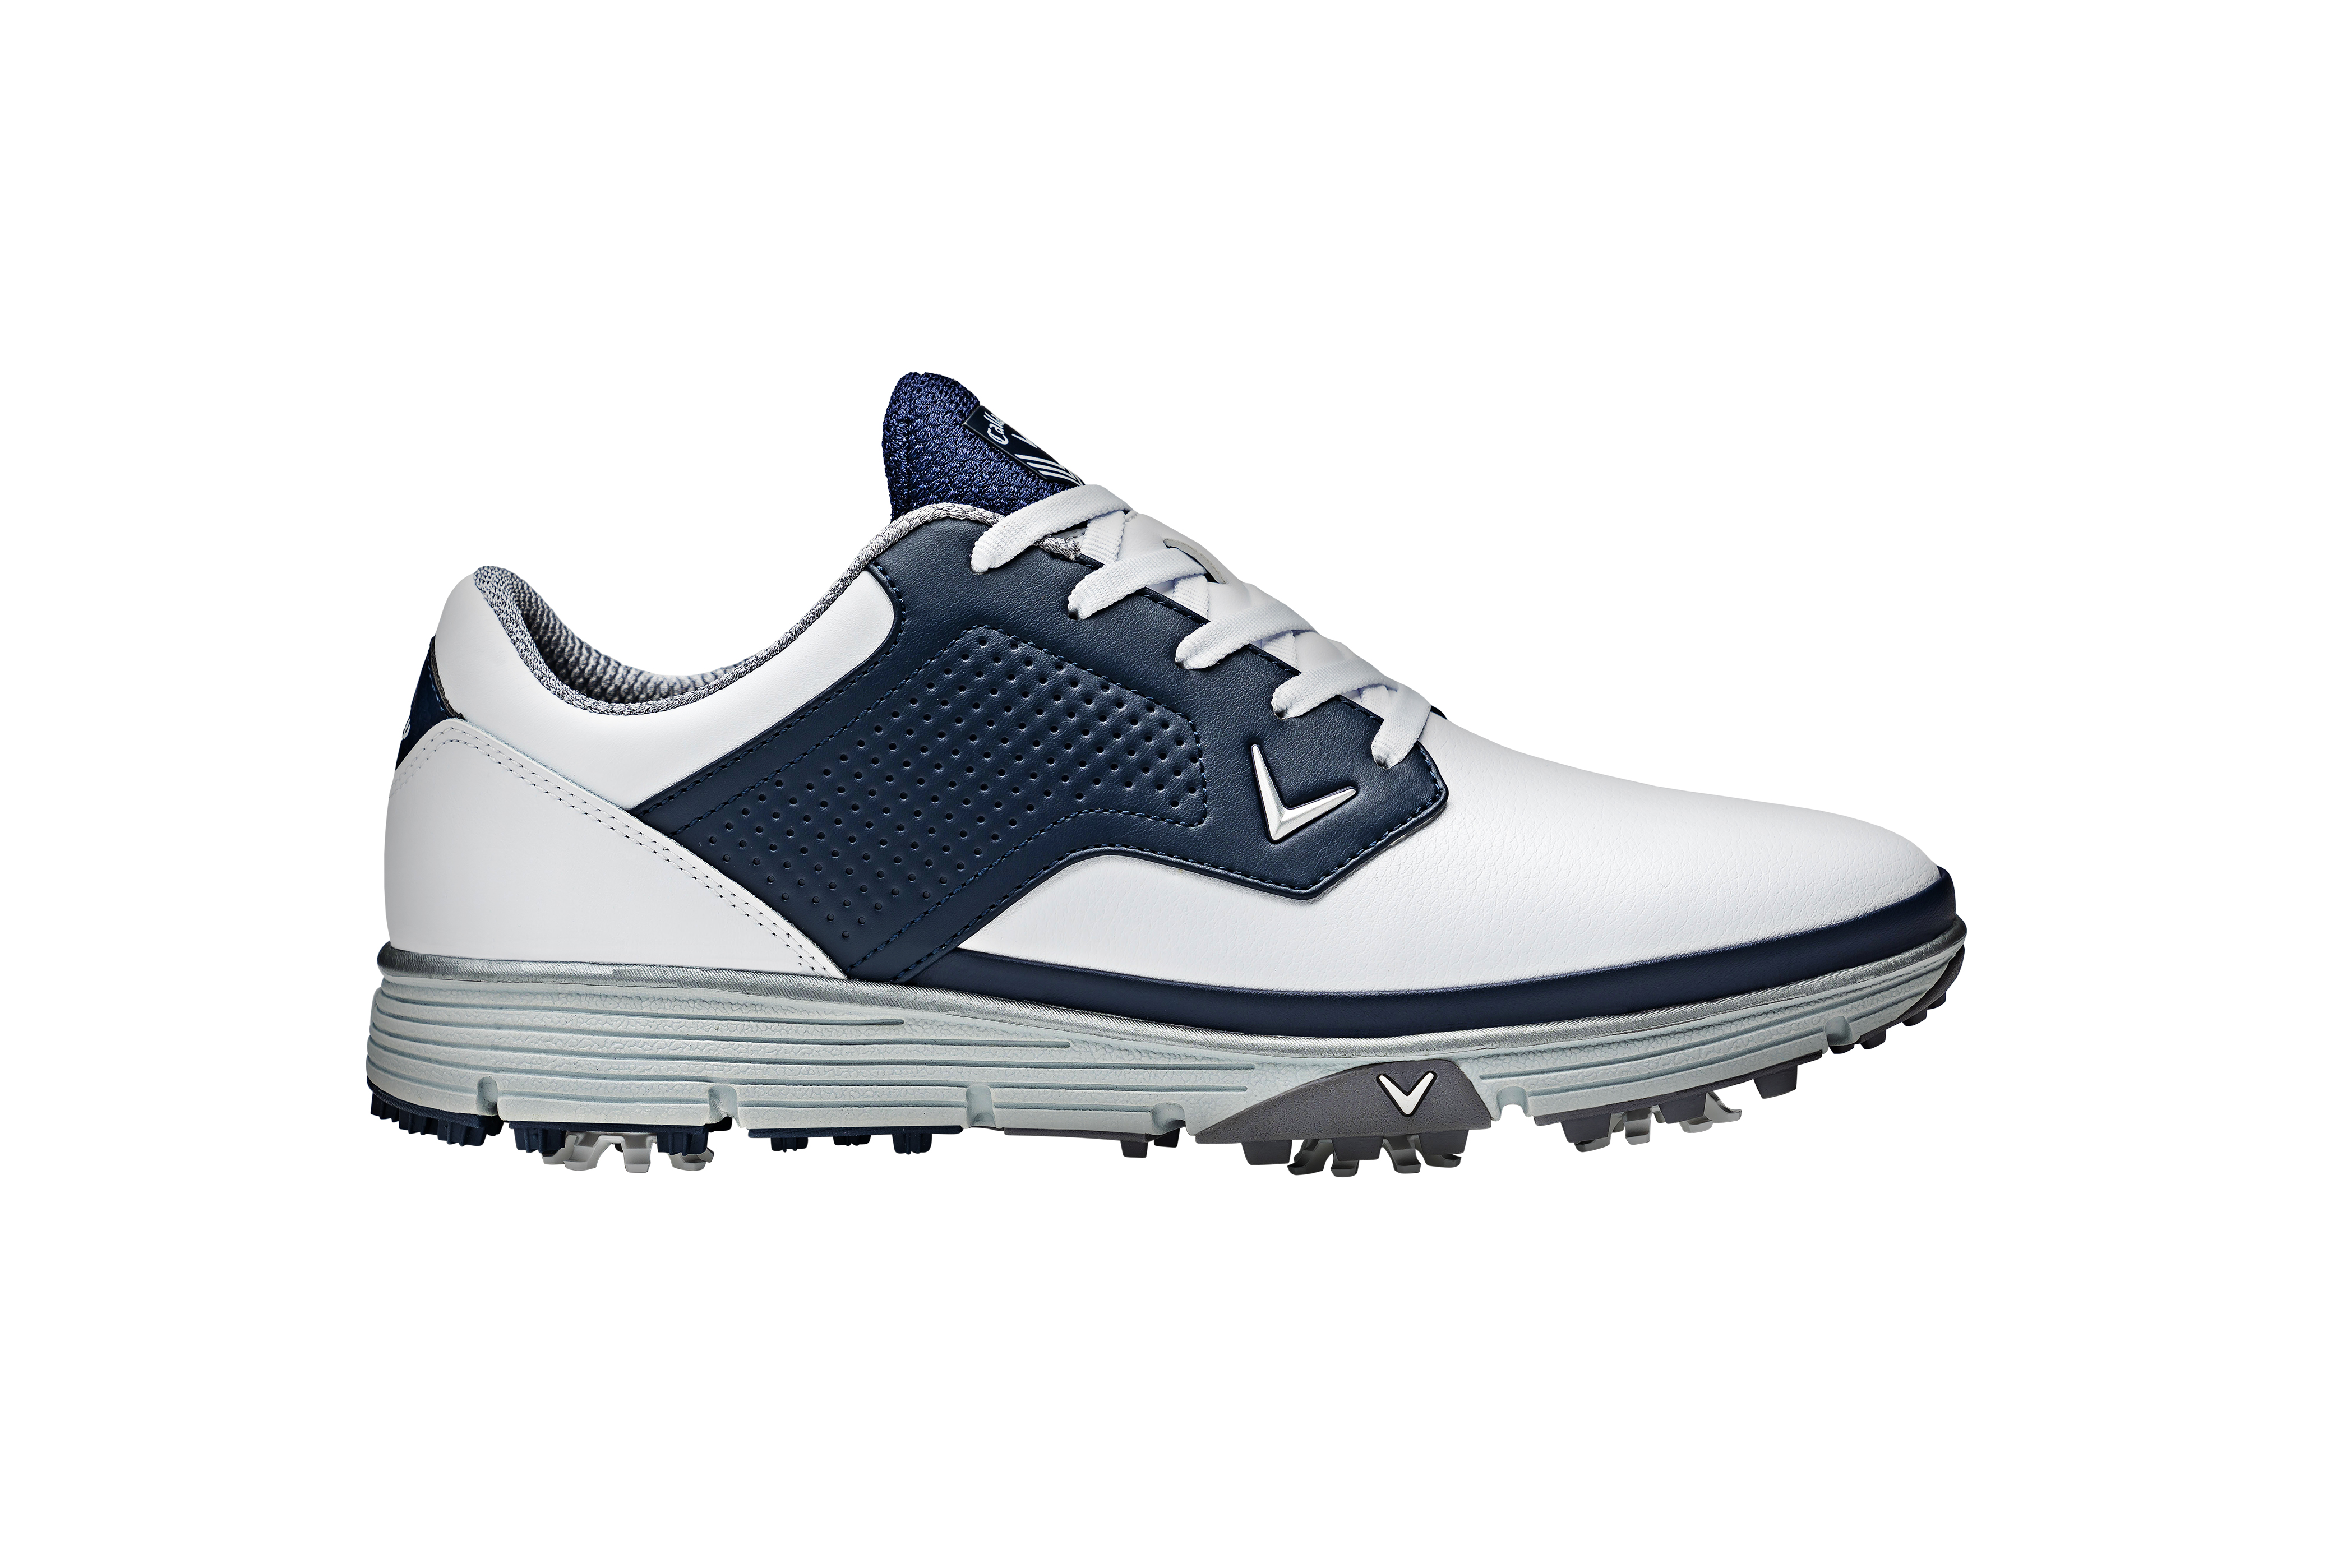 Callaway Mission pánské golfové boty, bílé/tmavě modré, vel. 7 UK